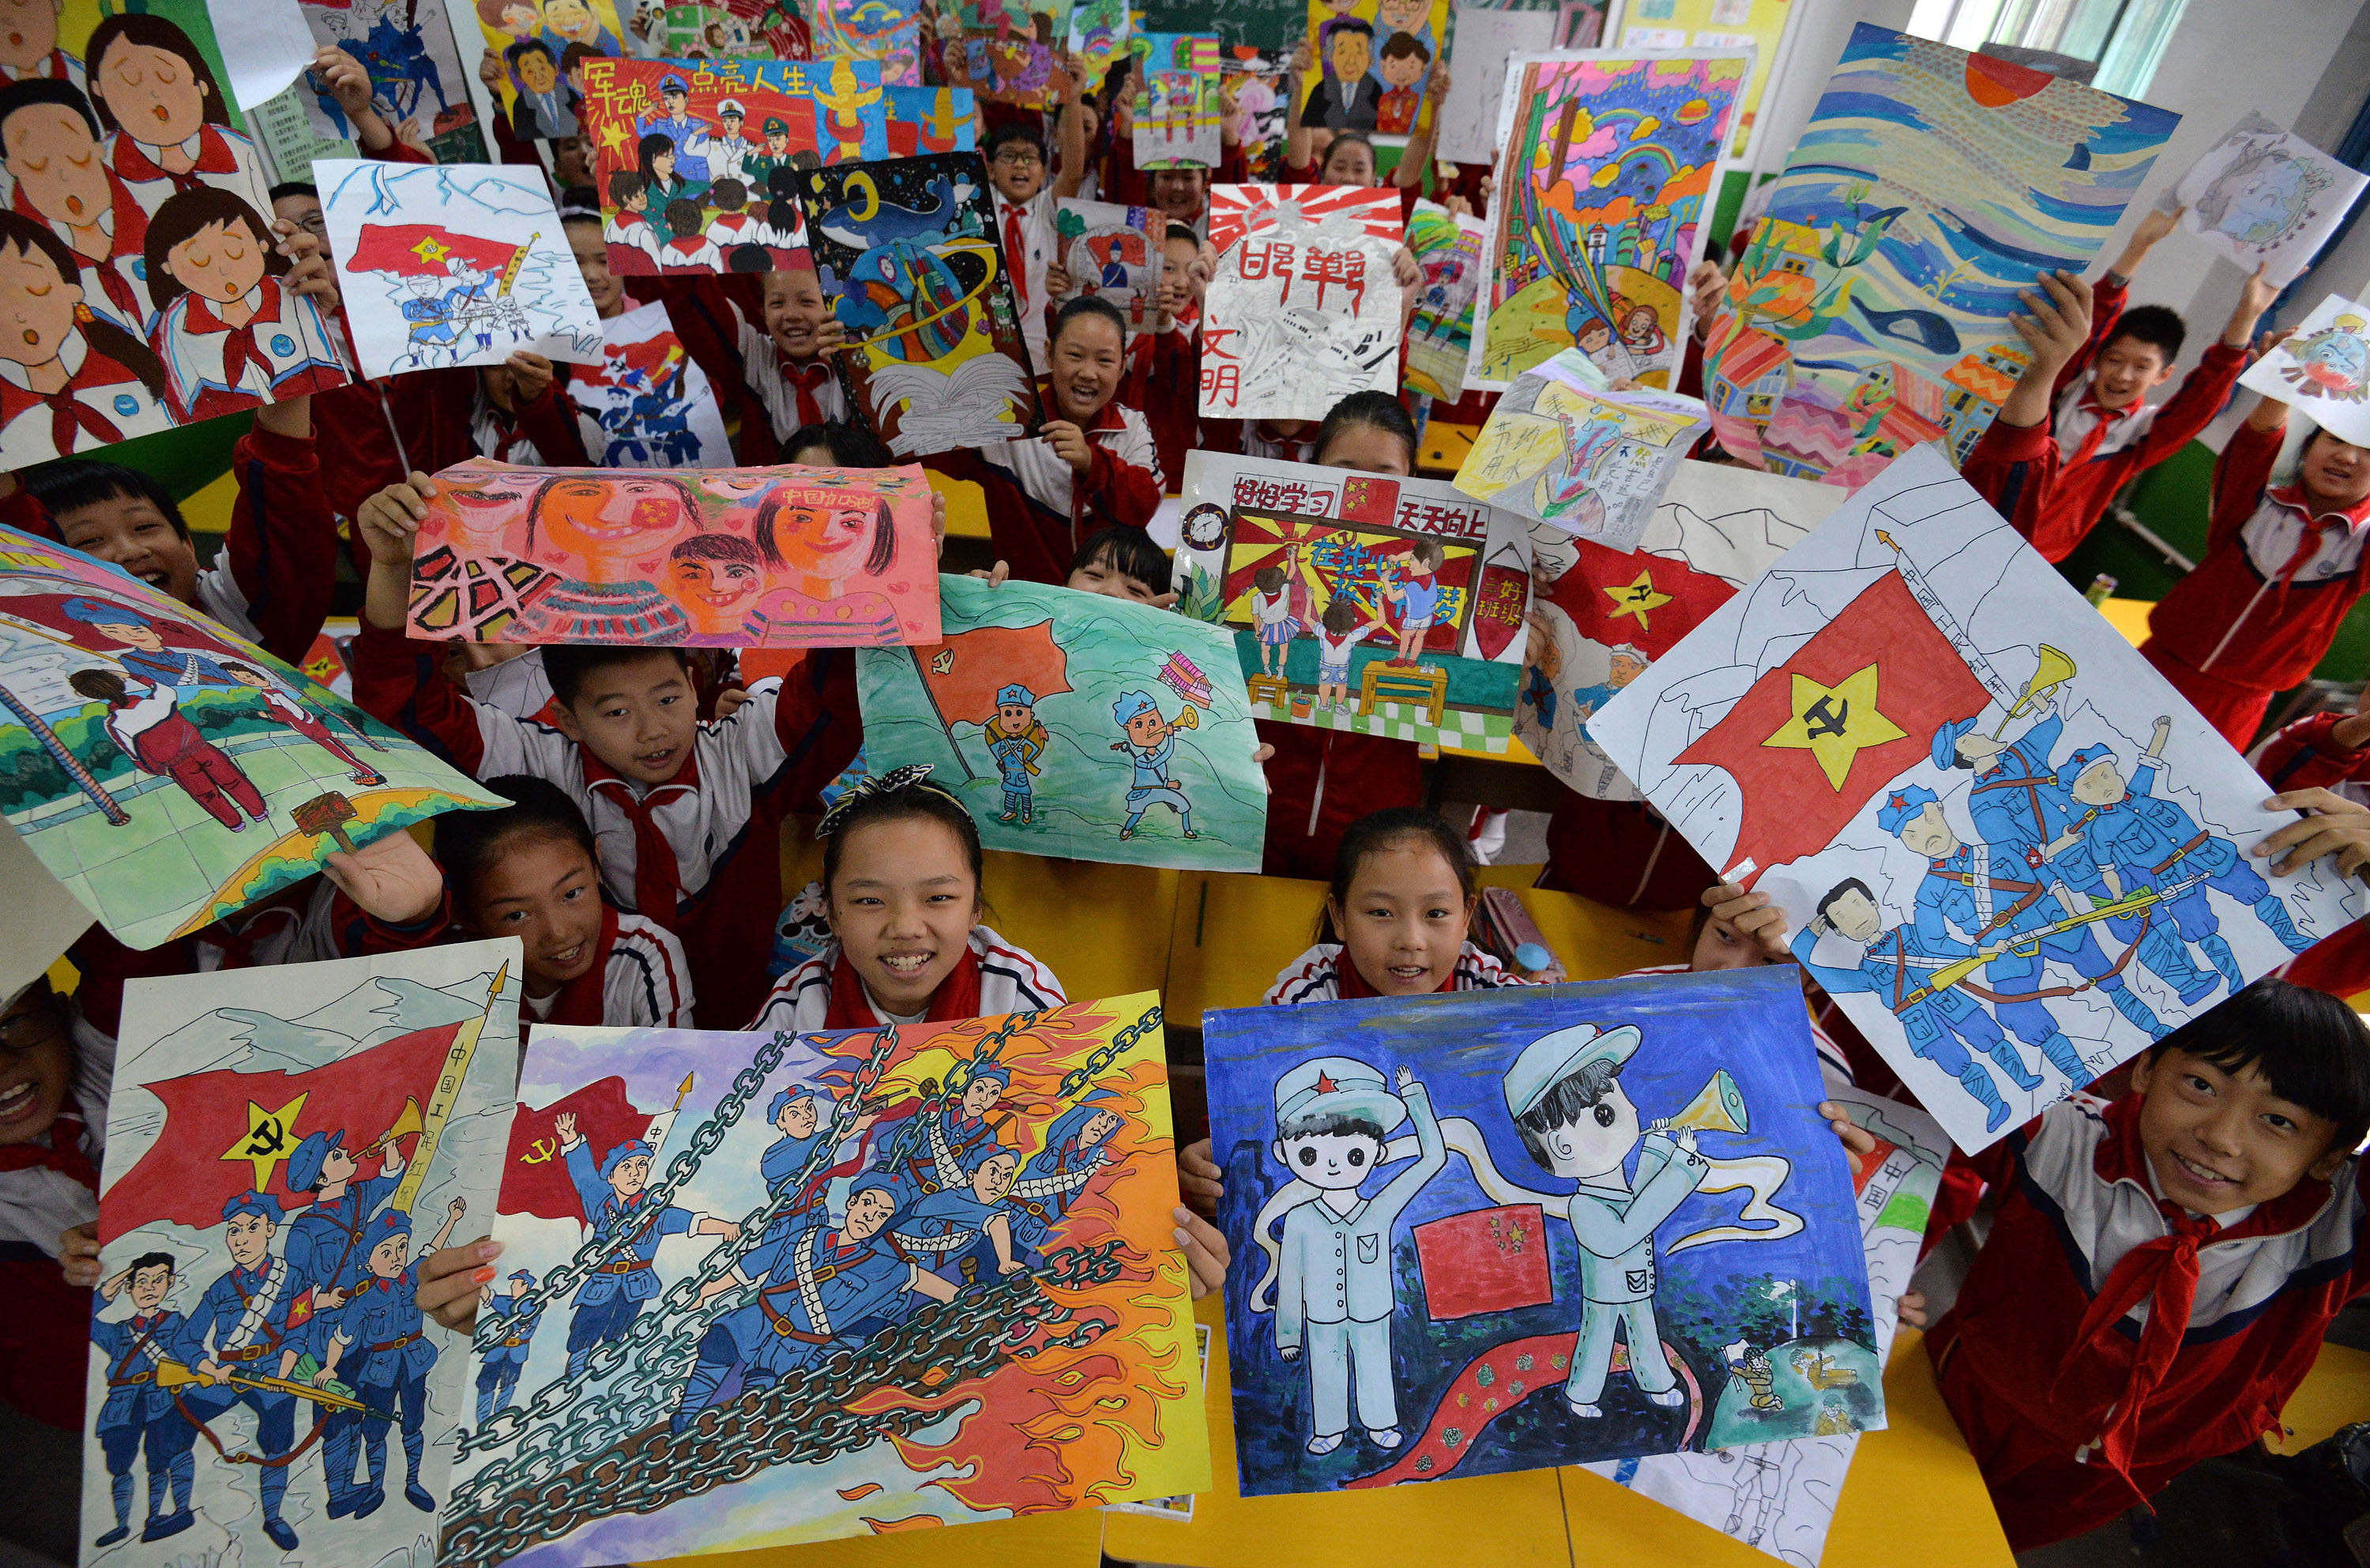 邯郸市复兴区箭岭路学校学生在课堂上展示"我心中的长征"为主题的画作